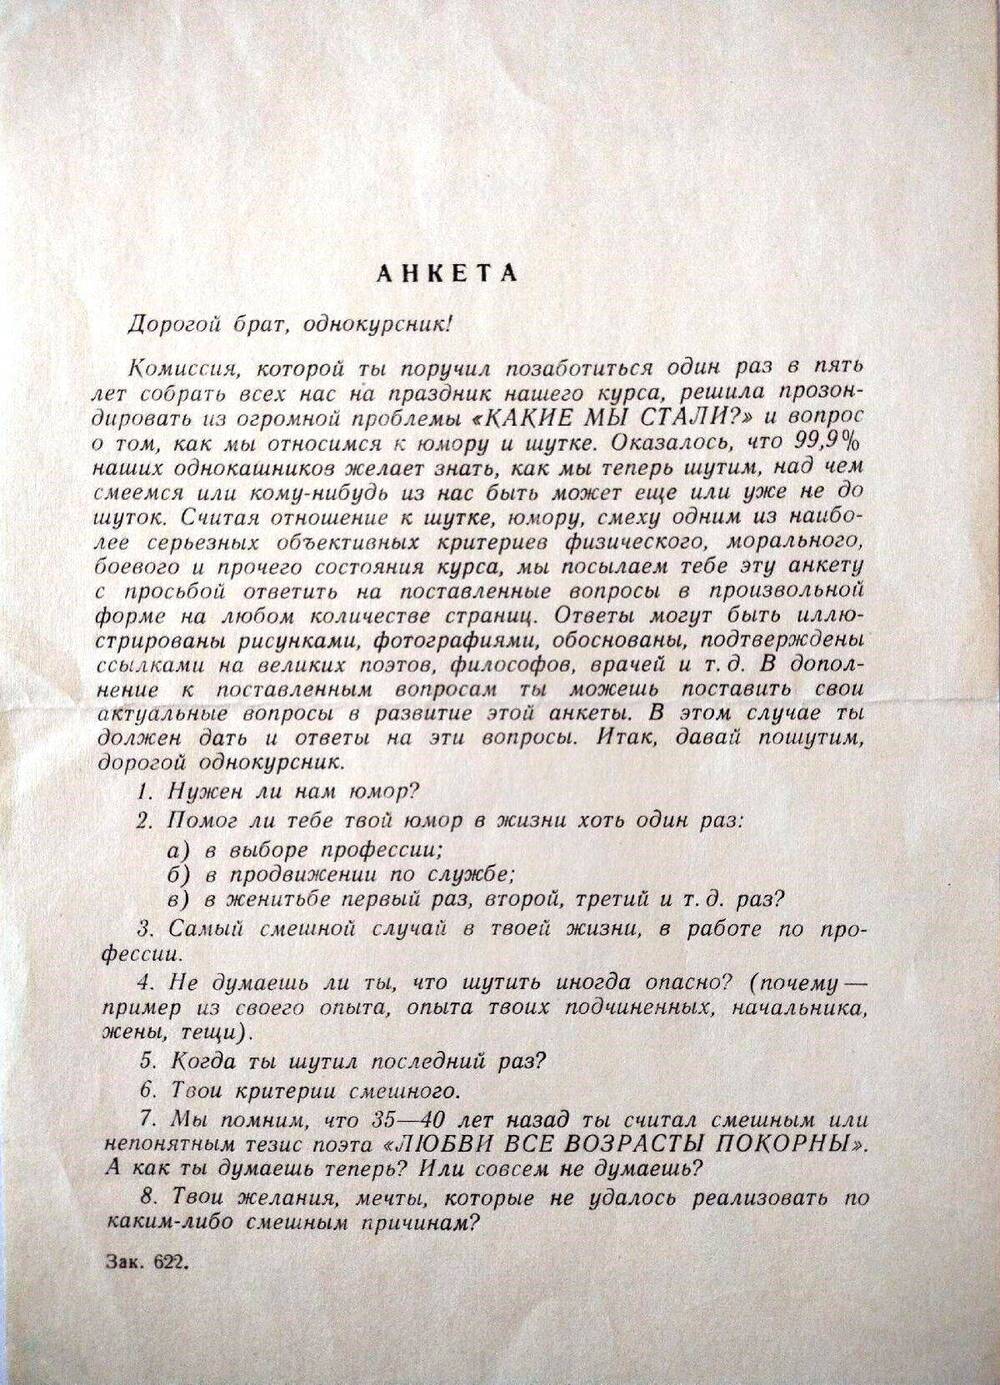 Анкета для выпускников ВМА им. С.М. Кирова 1943 года.